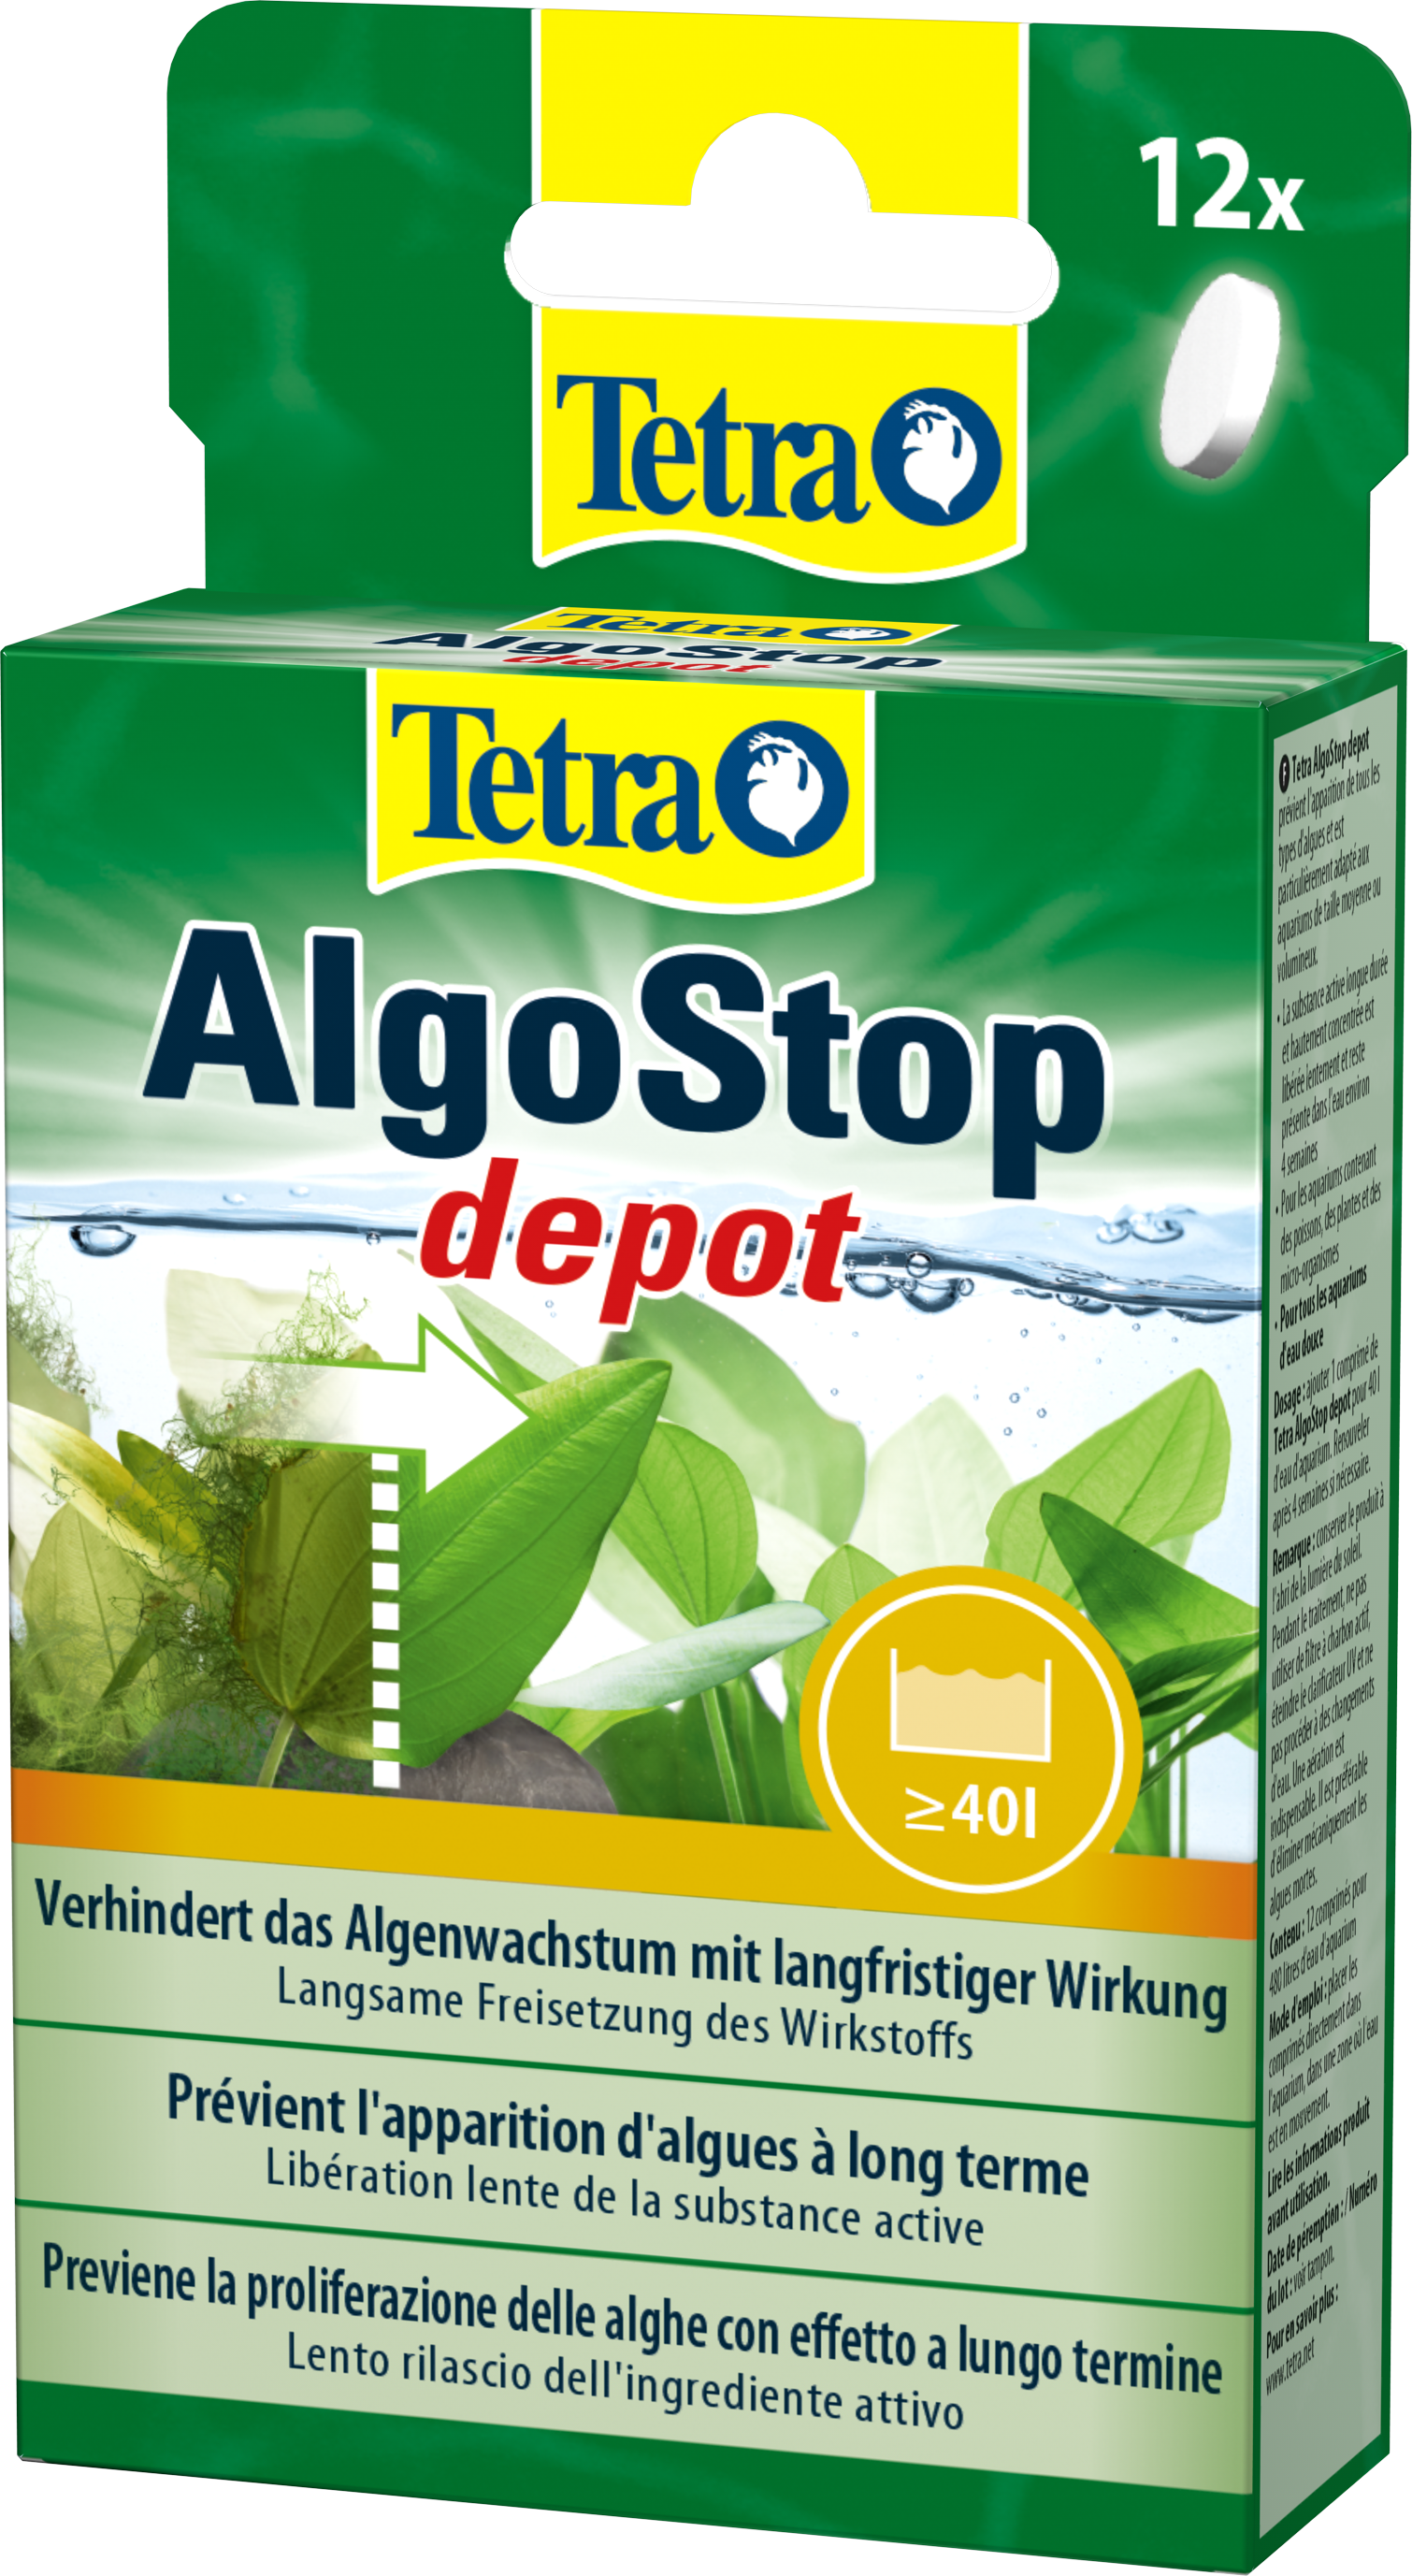 TetraAqua AlgoStop depot